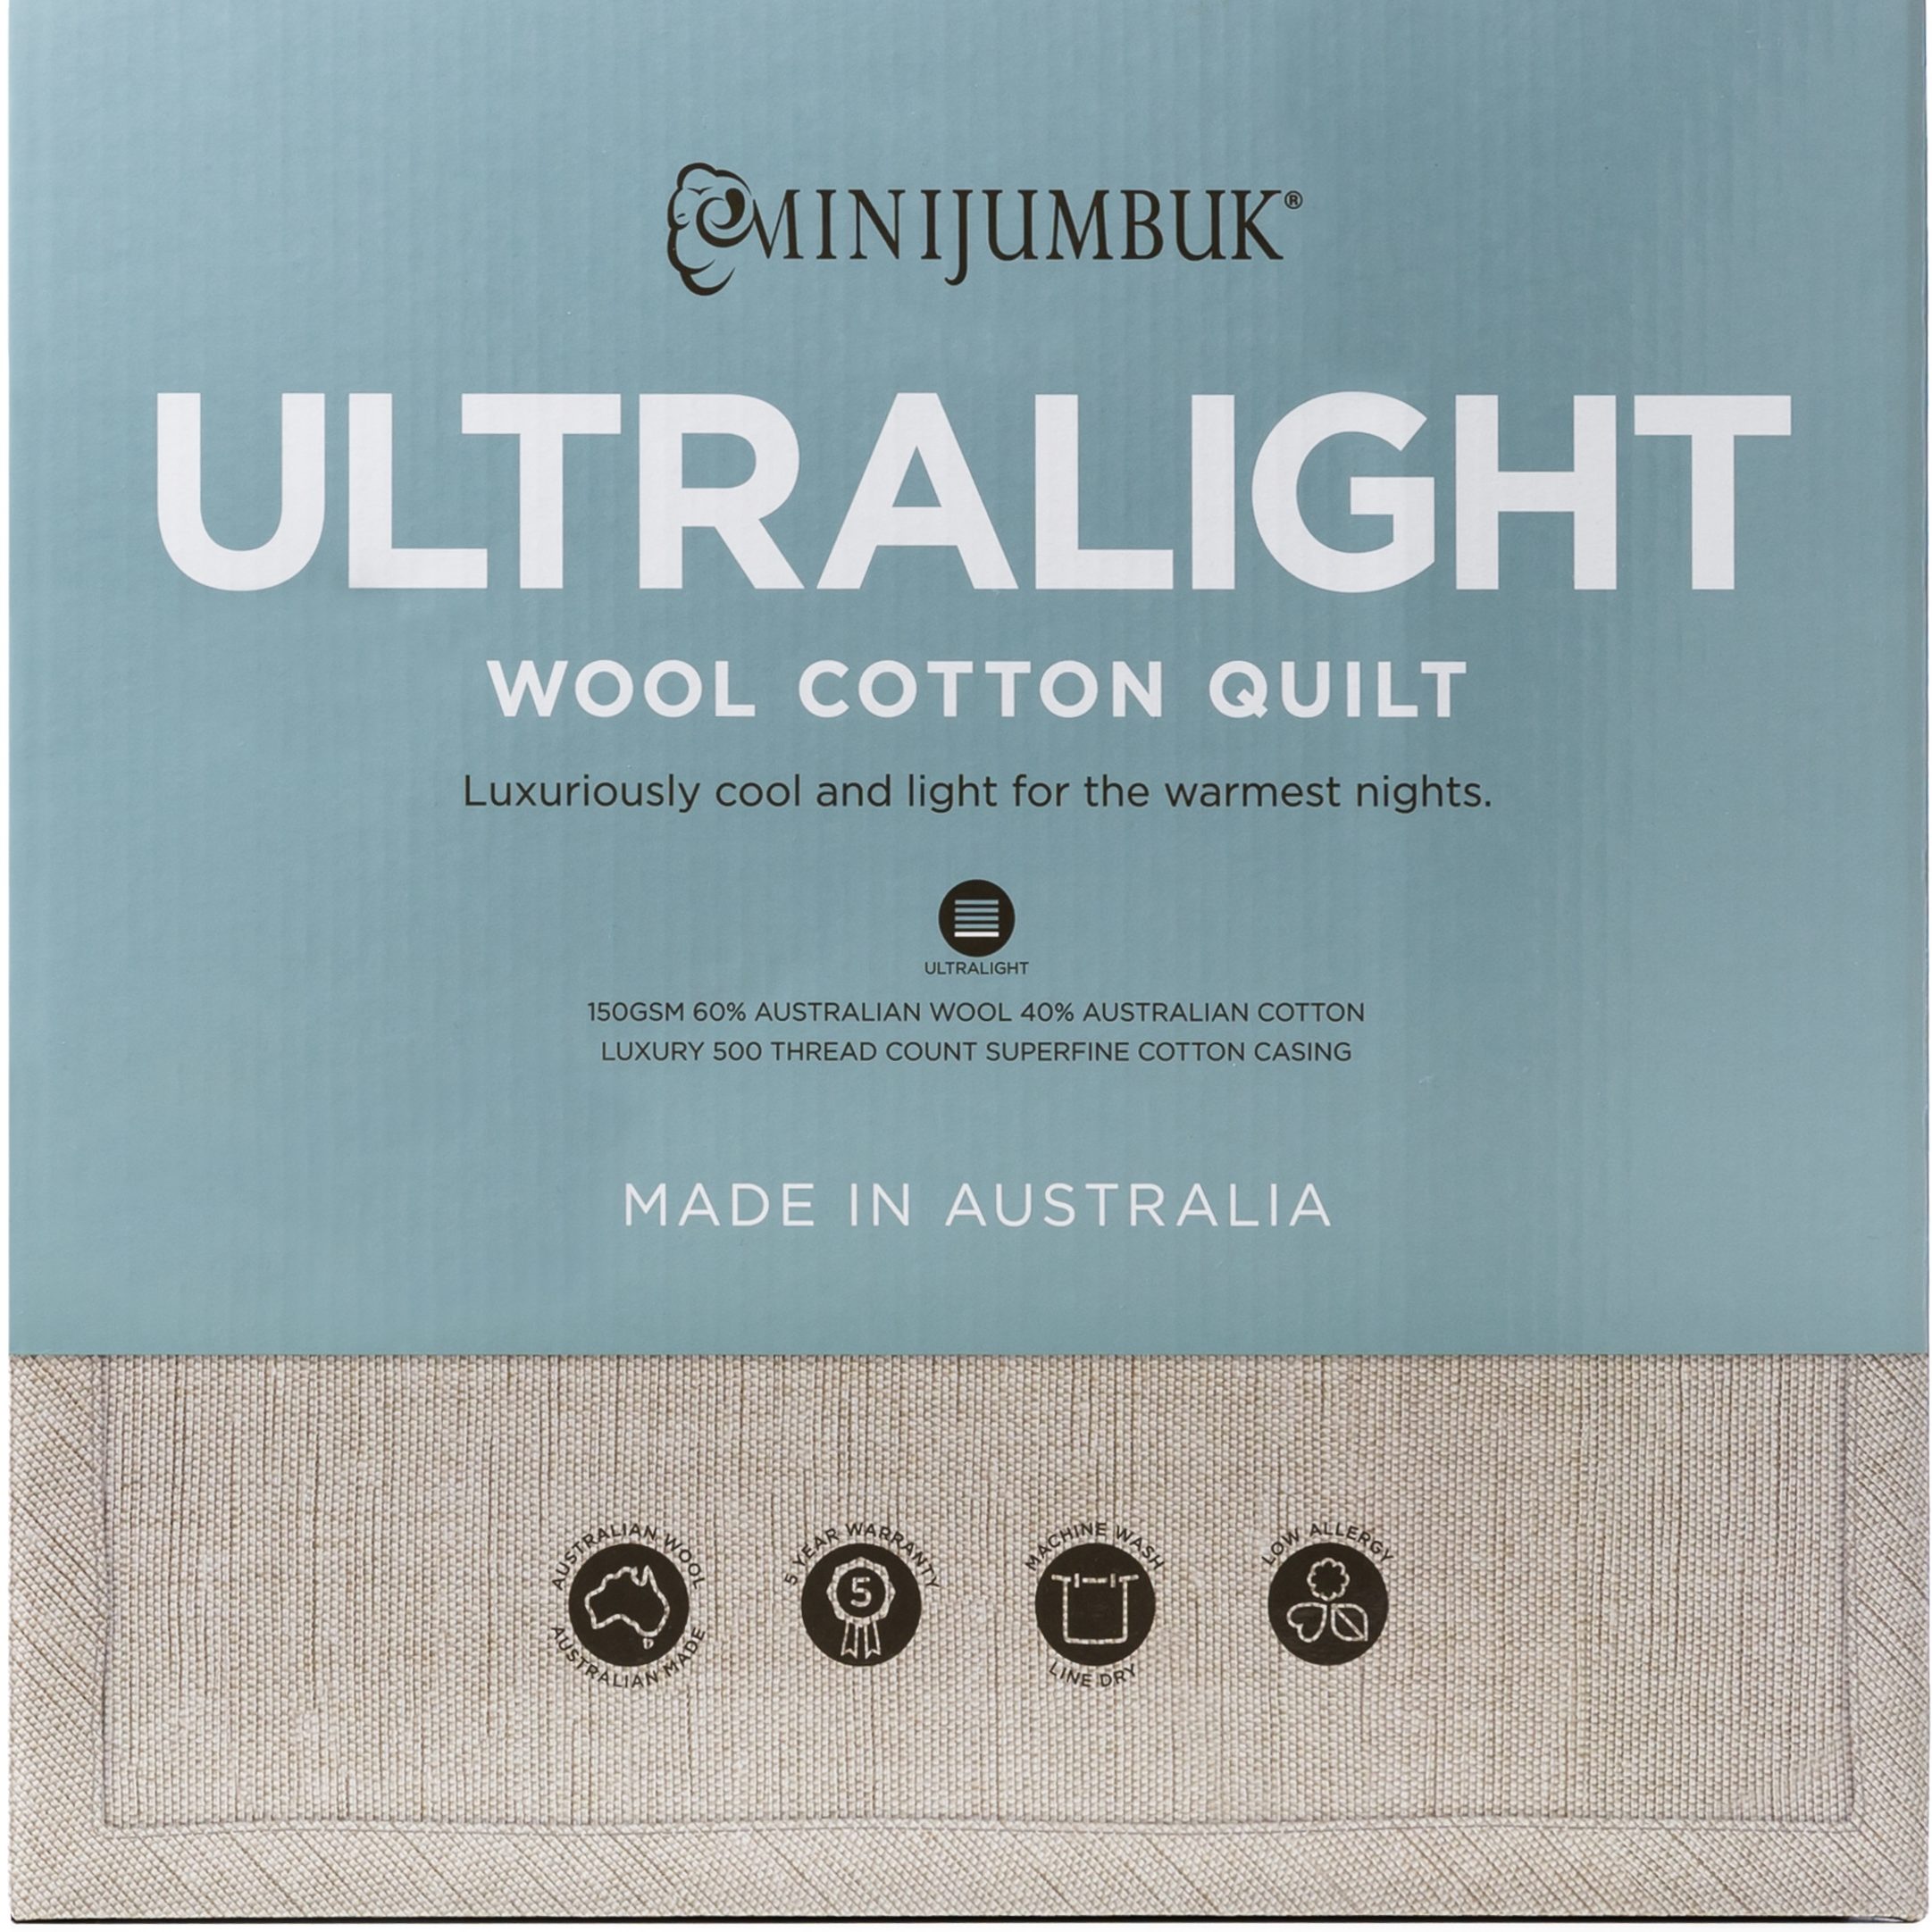 Details about   MINIJUMBUK Ultralight Australian Made Wool Quilt /Doona /Duvet QUEEN RRP $429 